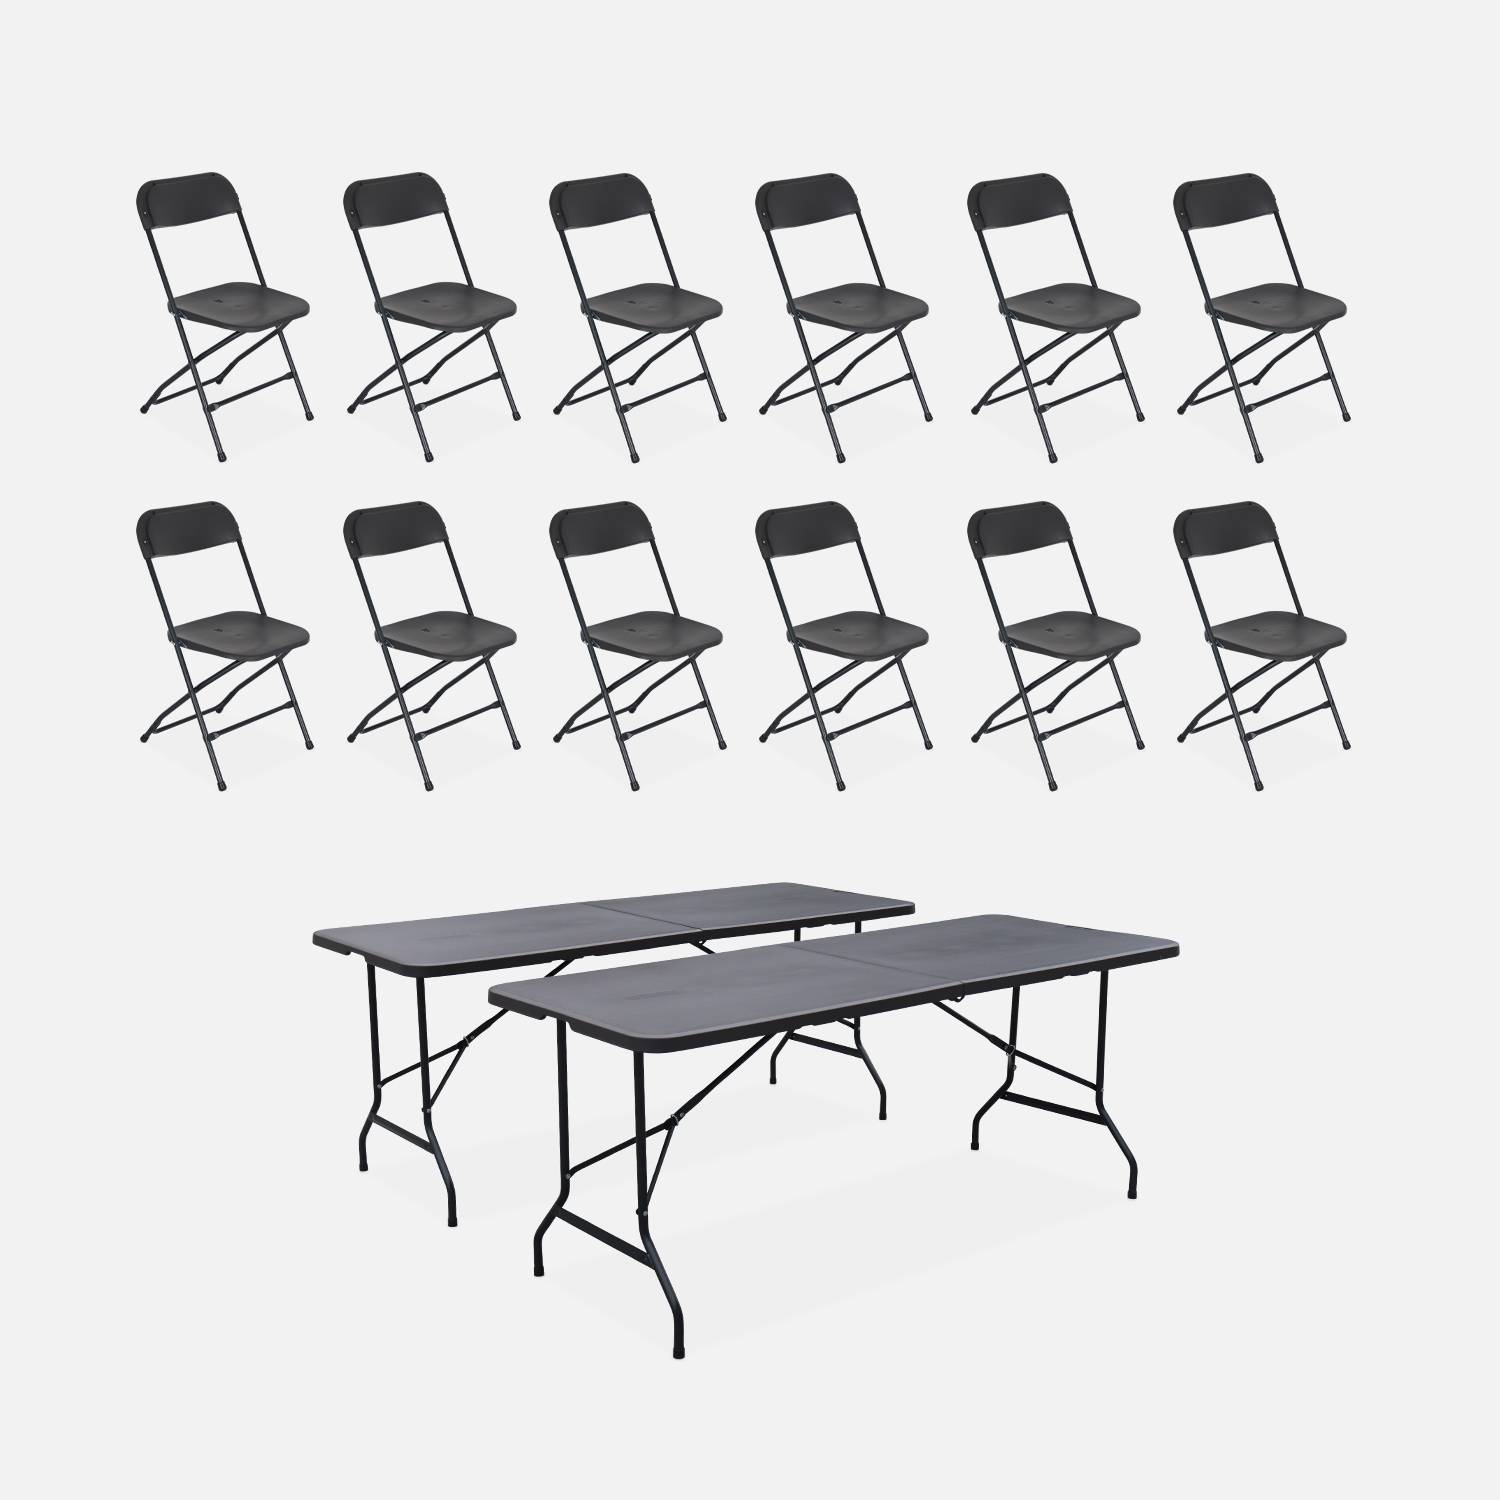 Lote de 2 mesas de recepción plegables de plástico + 12 sillas, Gris oscuro